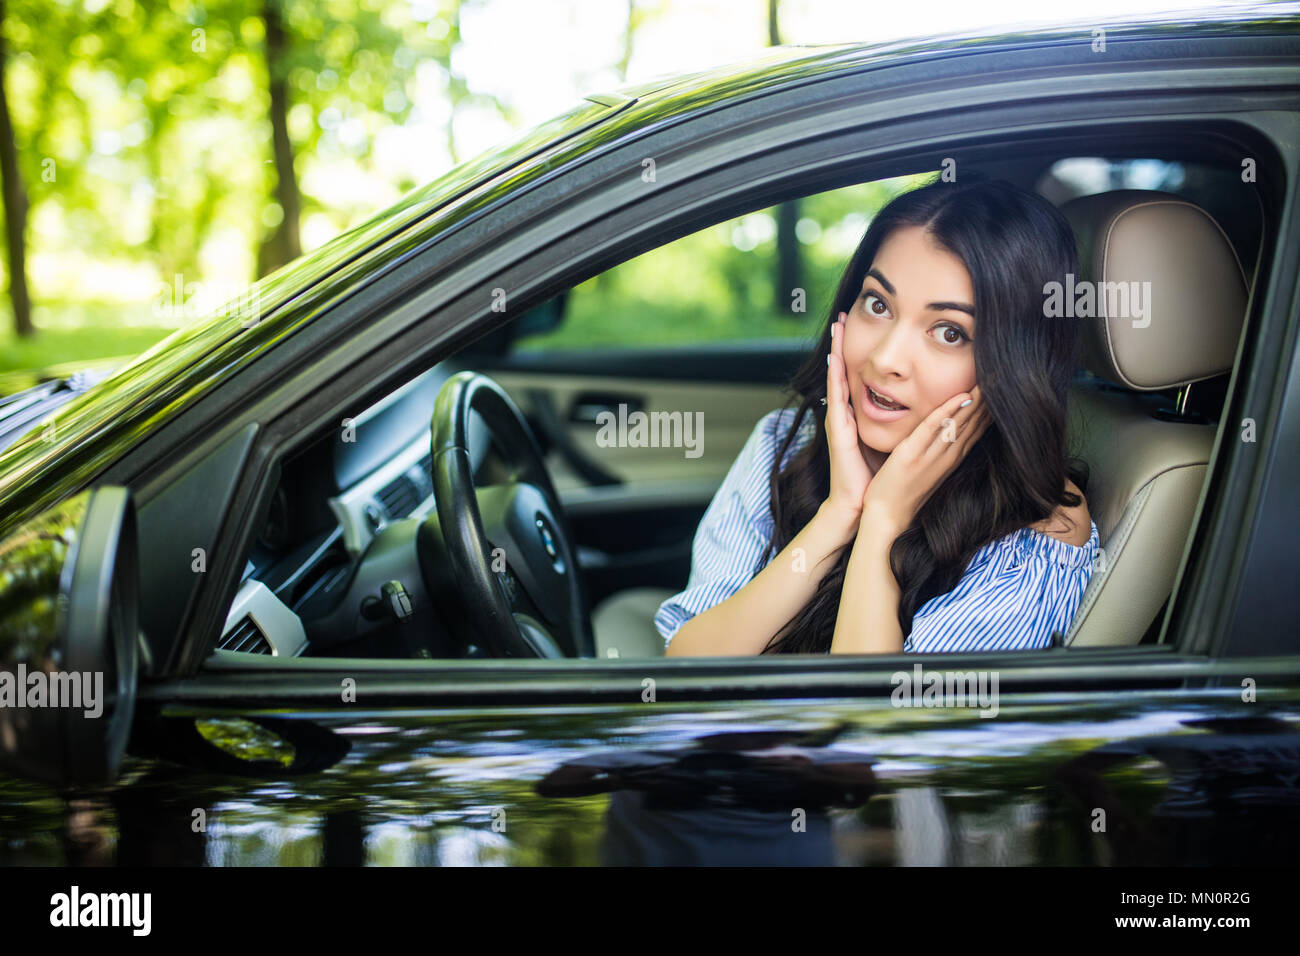 Abgelenkt Schreck Gesicht einer Frau fahren Auto, weit geöffneten Mund Augen holding Radseite Fenster anzeigen. Negative menschliche Gesicht expression emotion Reaktion. T Stockfoto